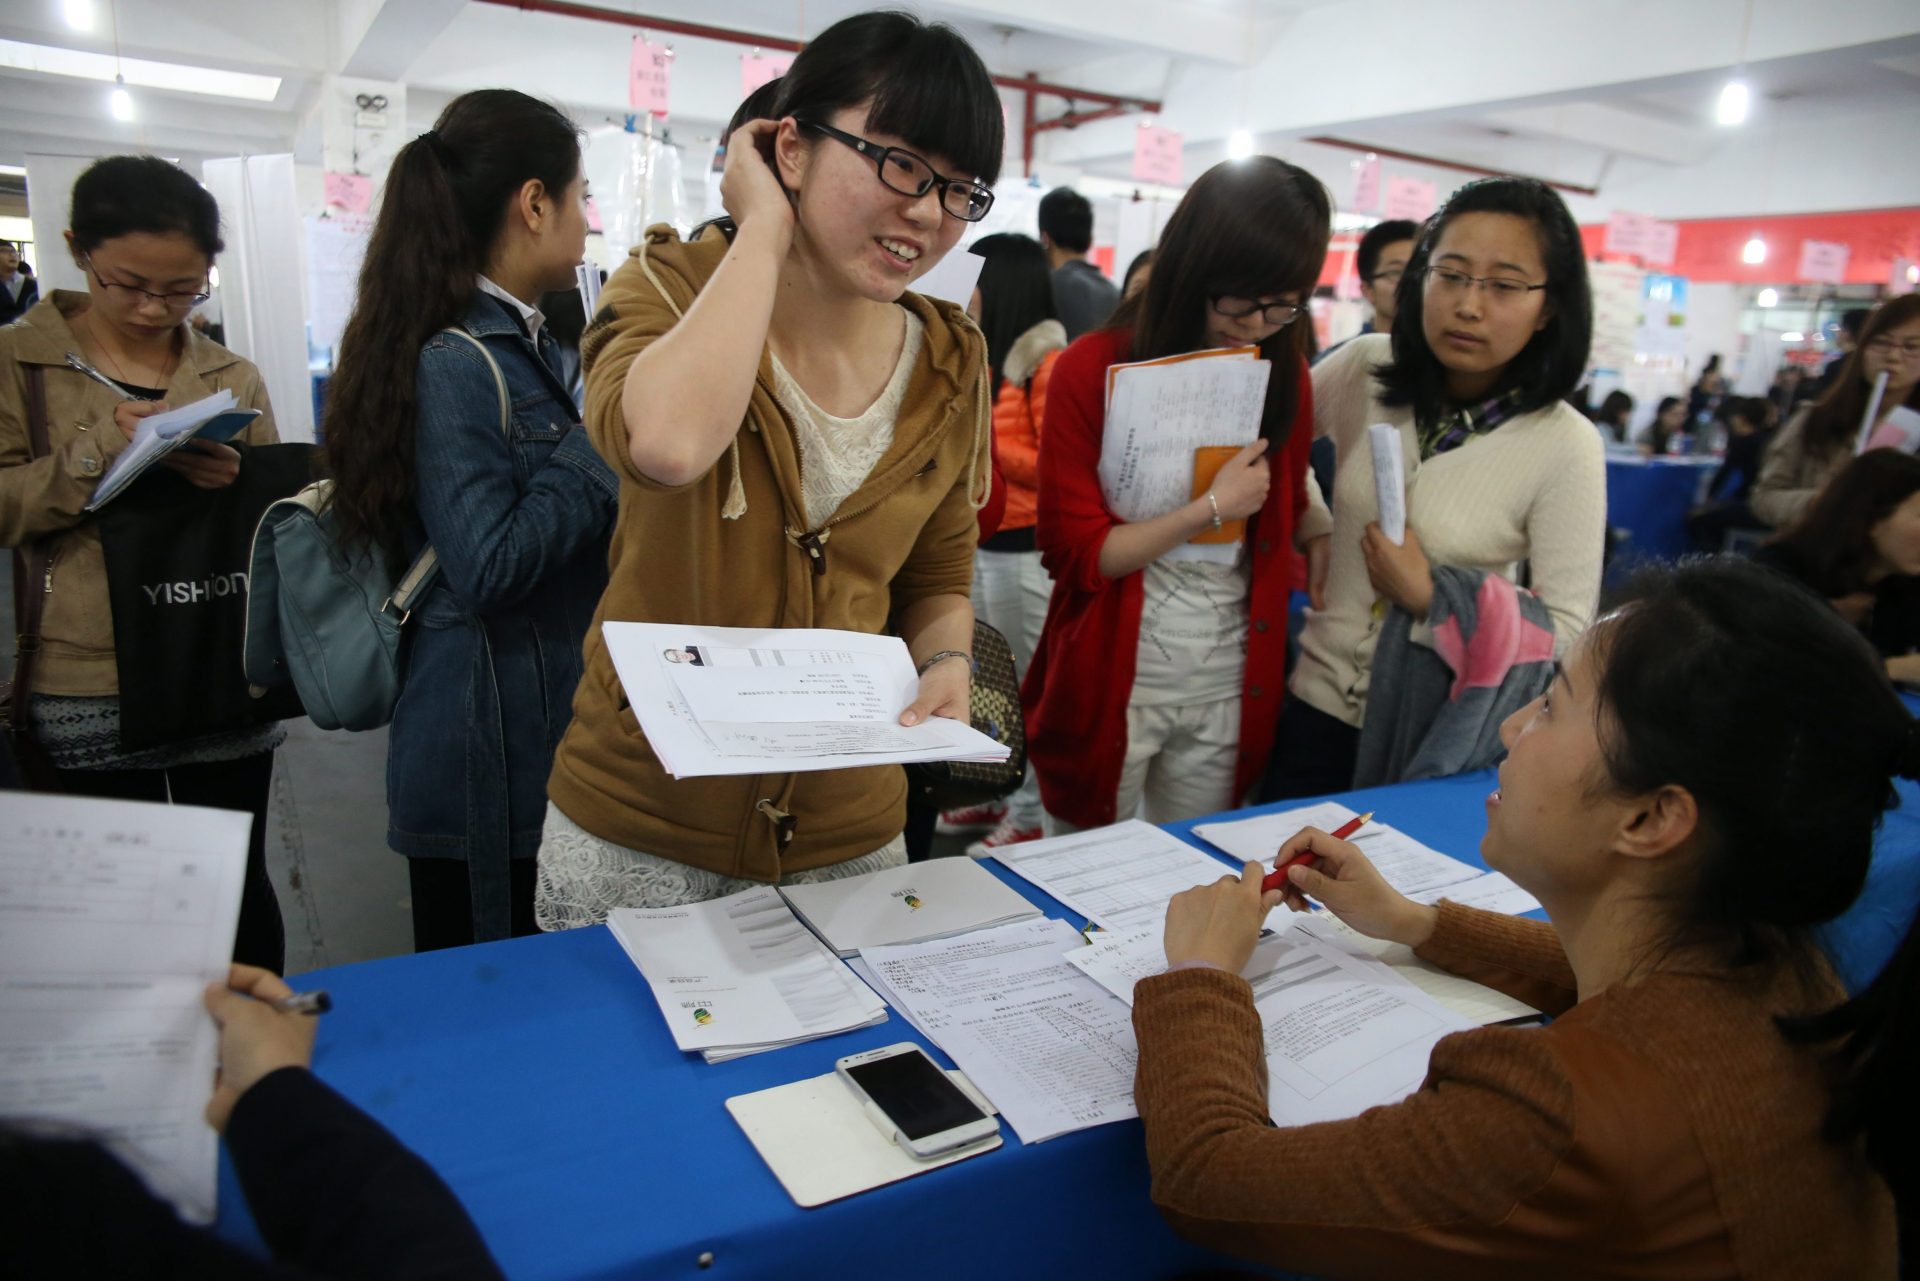 Foto LUSA: Uma estudante chinesa recém formada à procura de colocação no mercado de trabalho. Hangzhou, província de Zhejiang, China, 28 de março de 2014. EPA / WU HONG